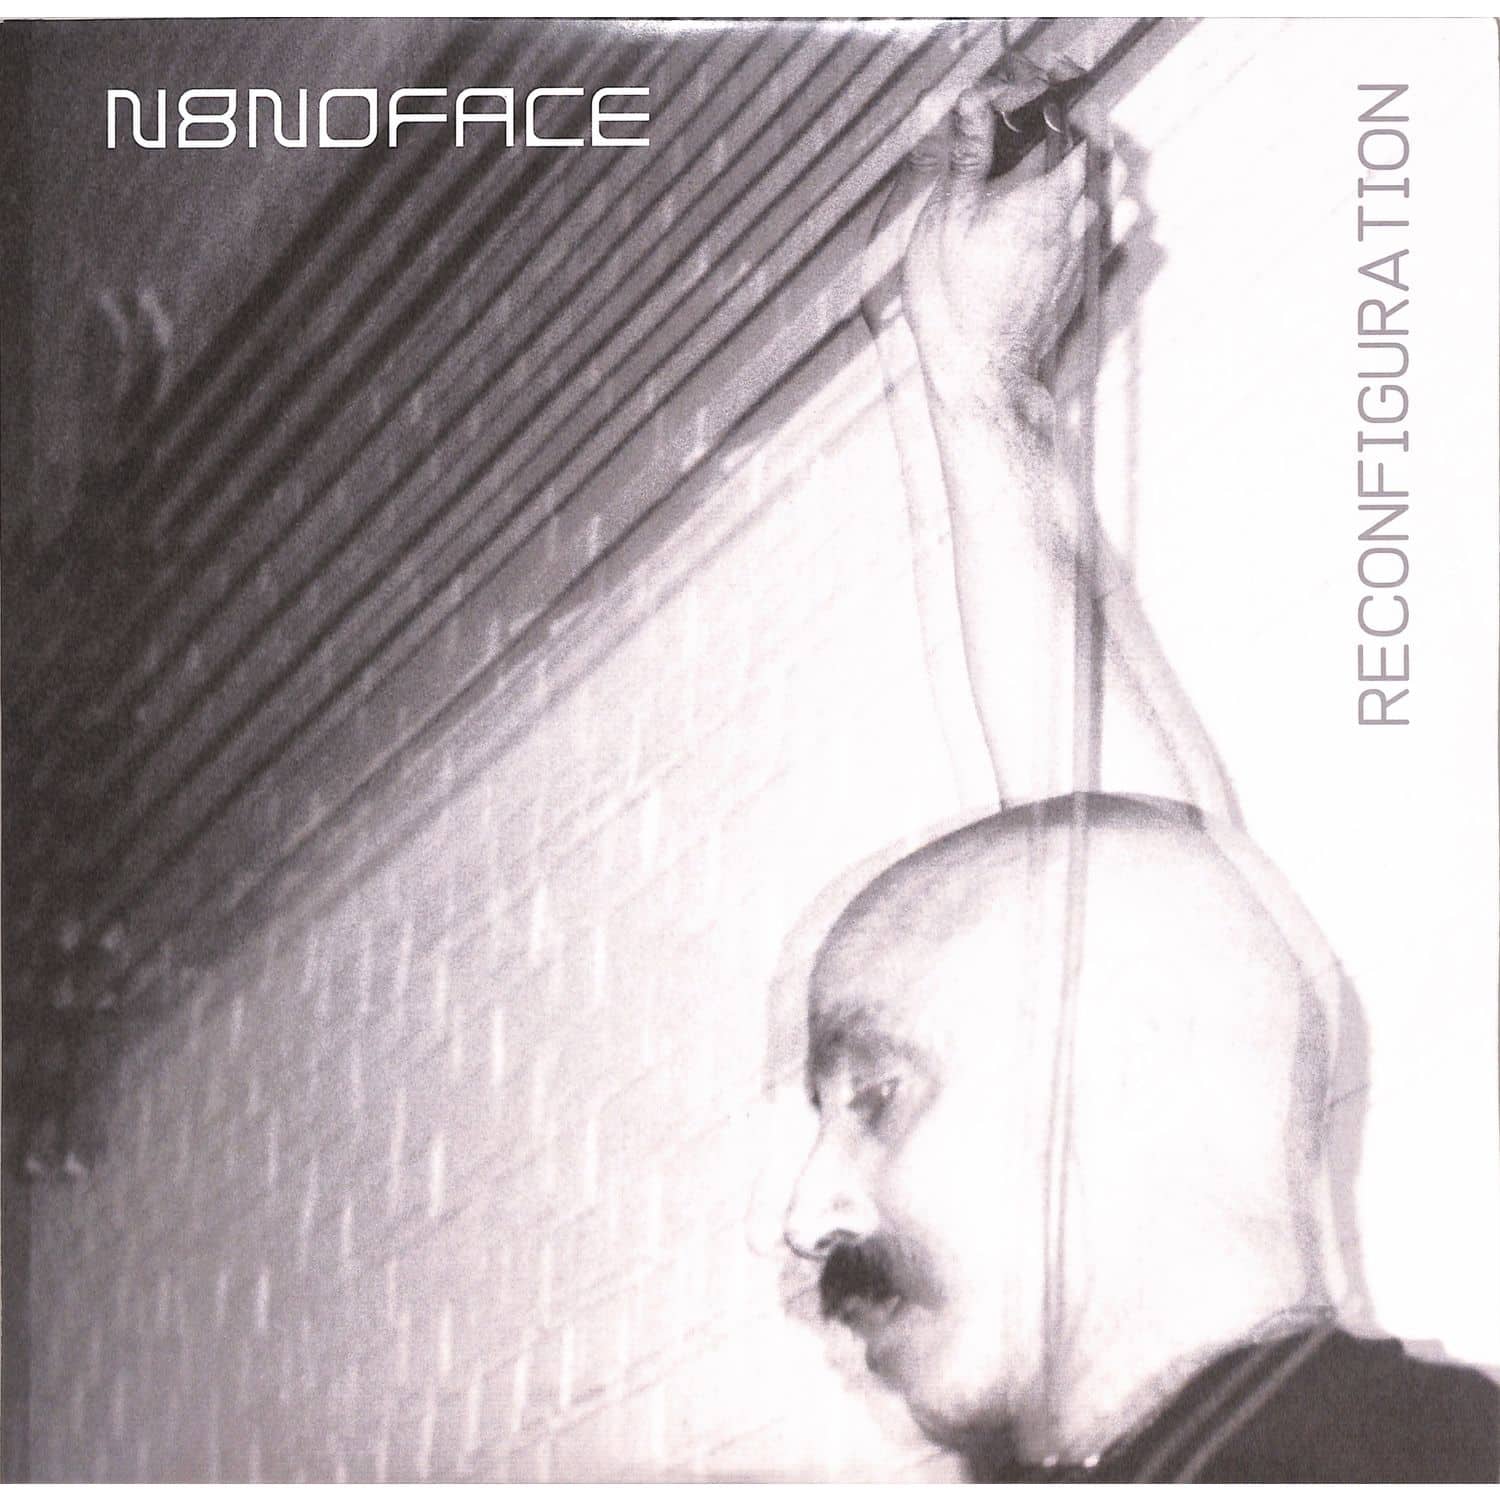 N8noface - RECONFIGURATION LP